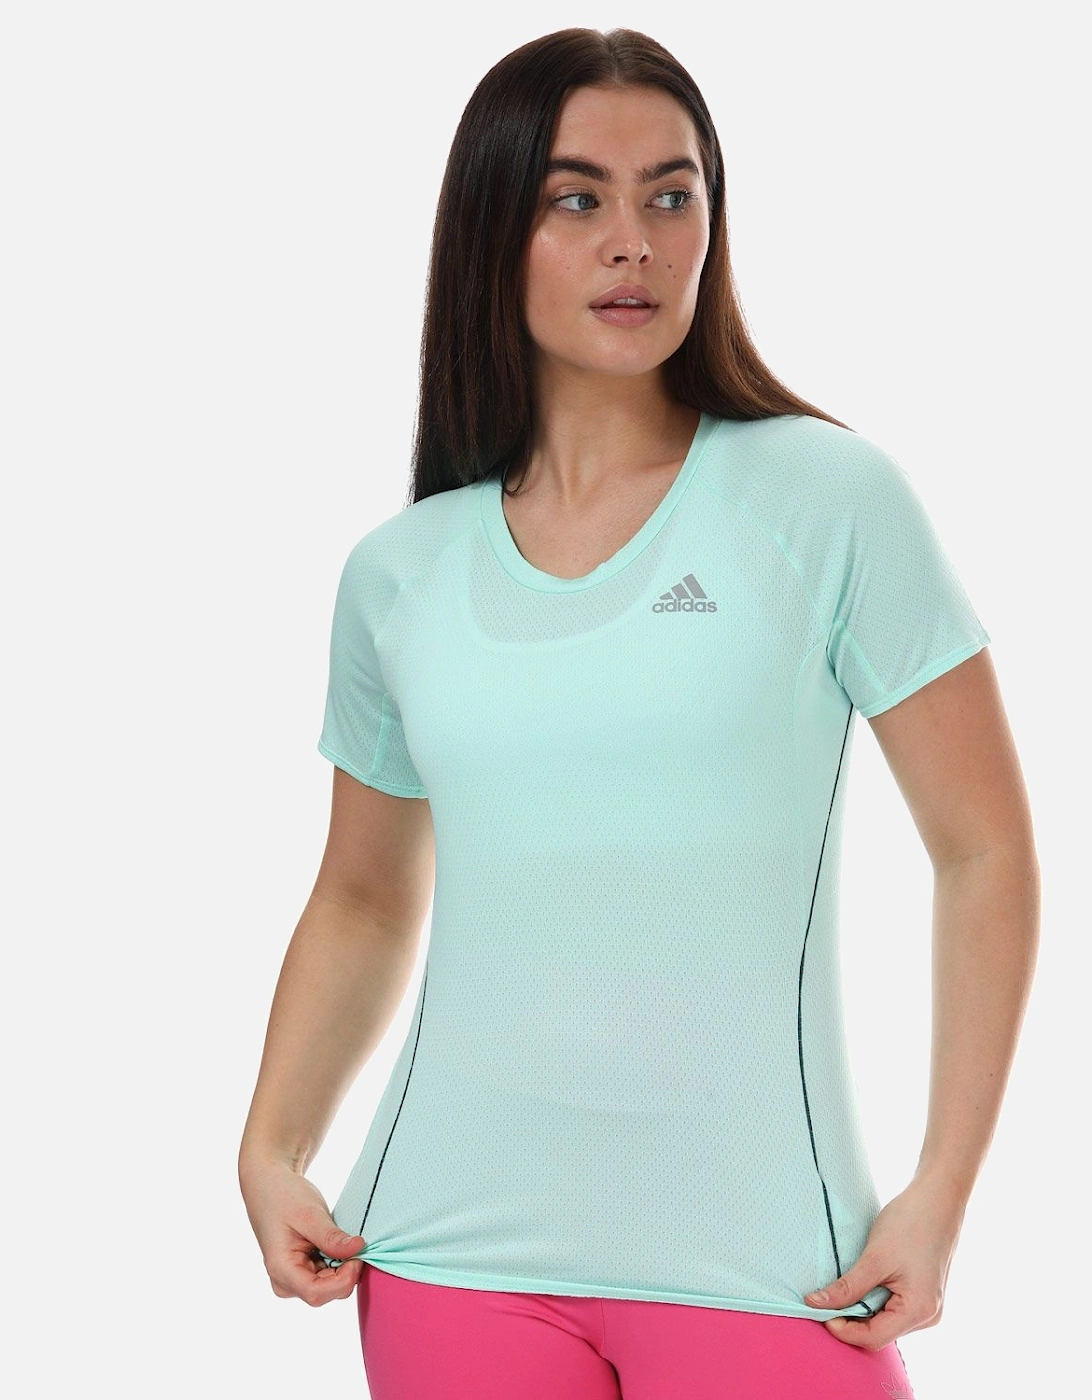 Adidas Women's Womens Adi Runner T-Shirt - Green - Size: 6/4